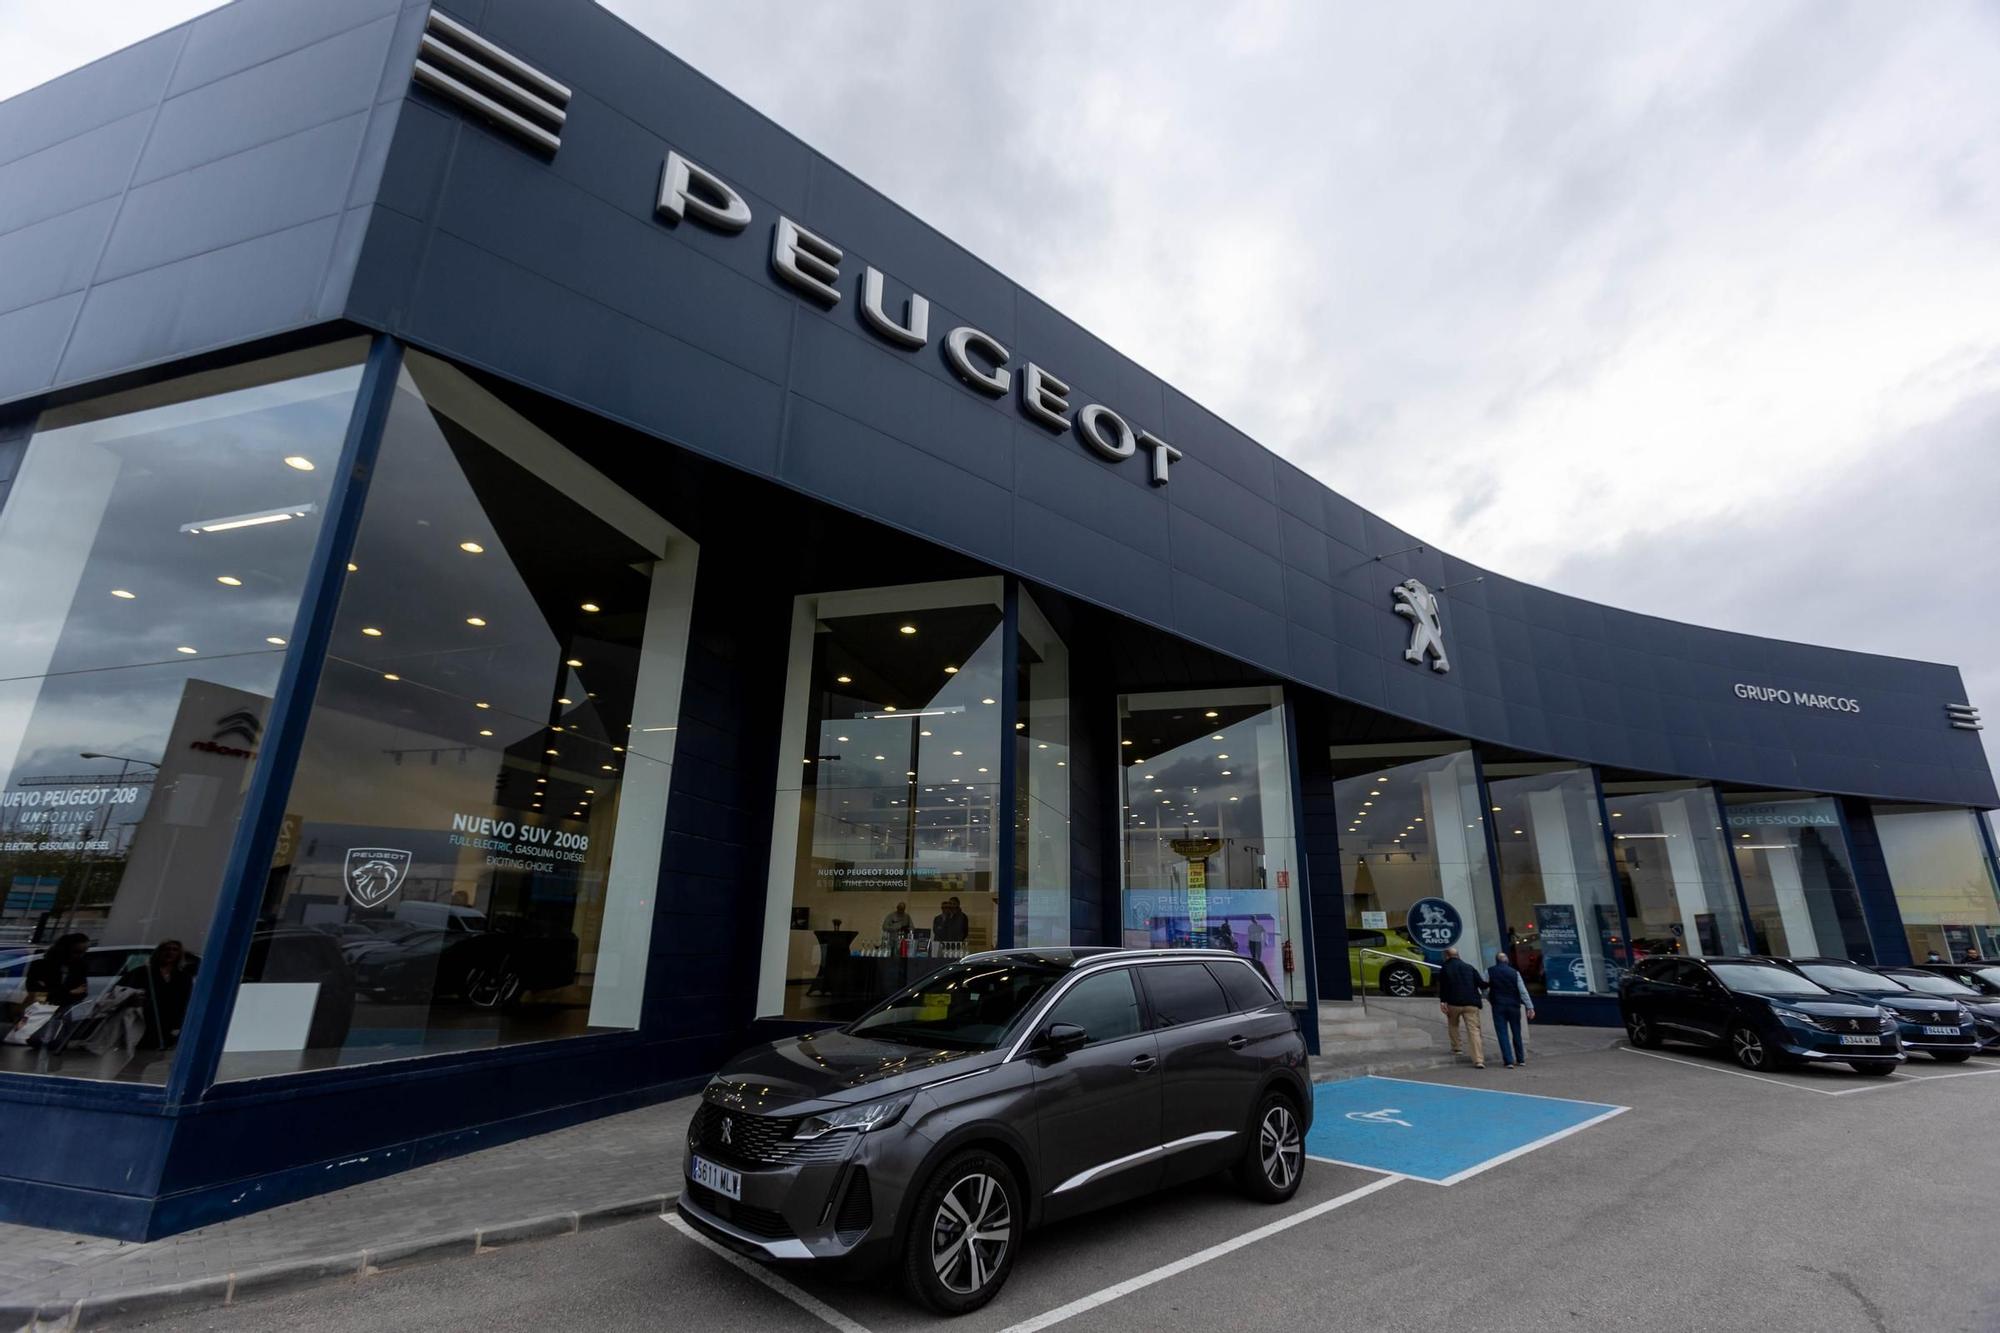 Peugeot presenta en Alicante el E3008, su nuevo modelo eléctrico